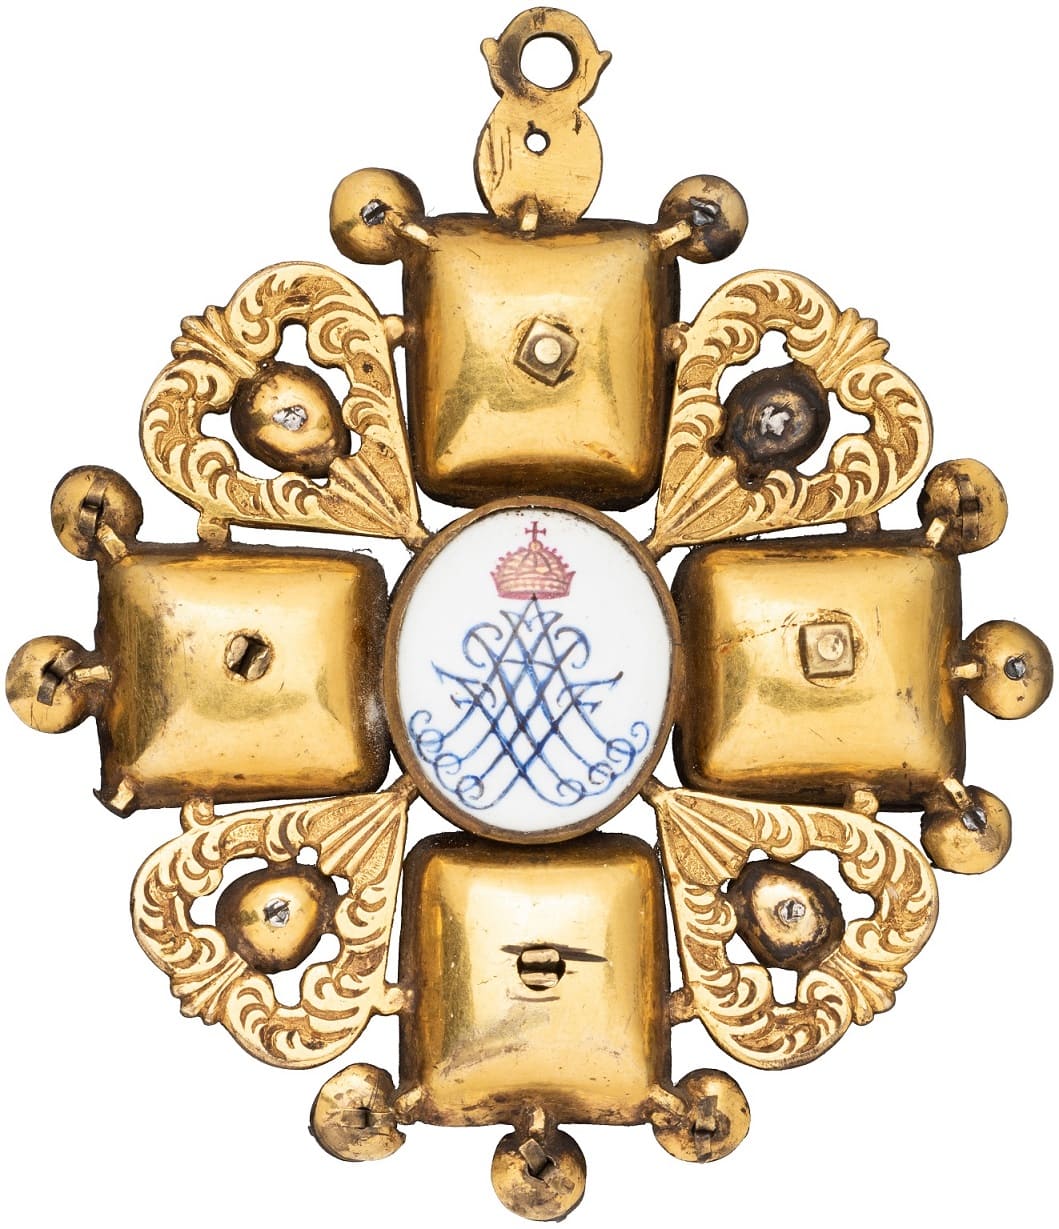 Знак ордена Святой  Анны 1-й степени голштинский тип.jpg